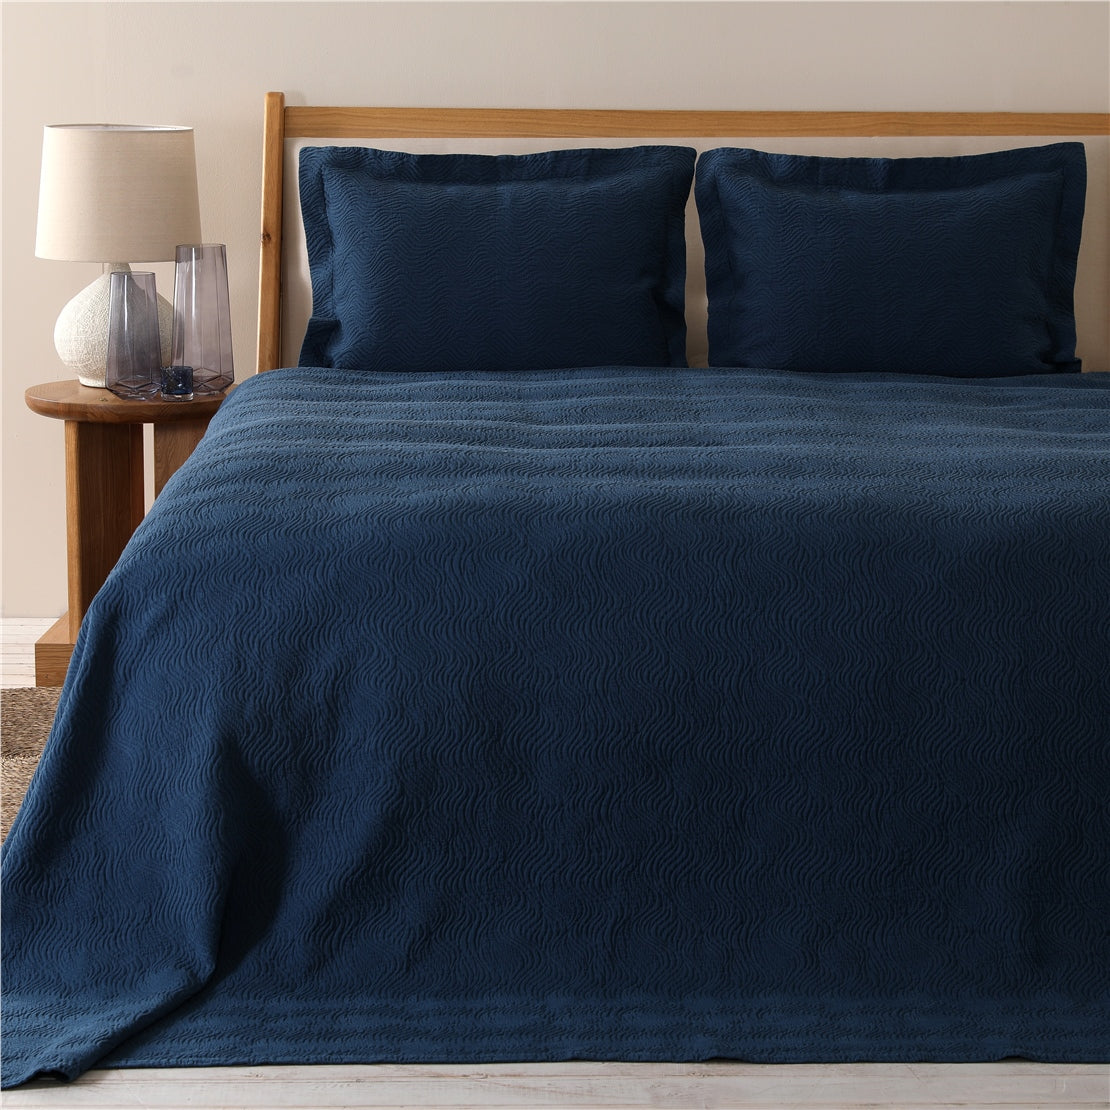 طقم غطاء سرير جايد مقاس ثنائي 240 × 250 سم أزرق مارين من شاكرا